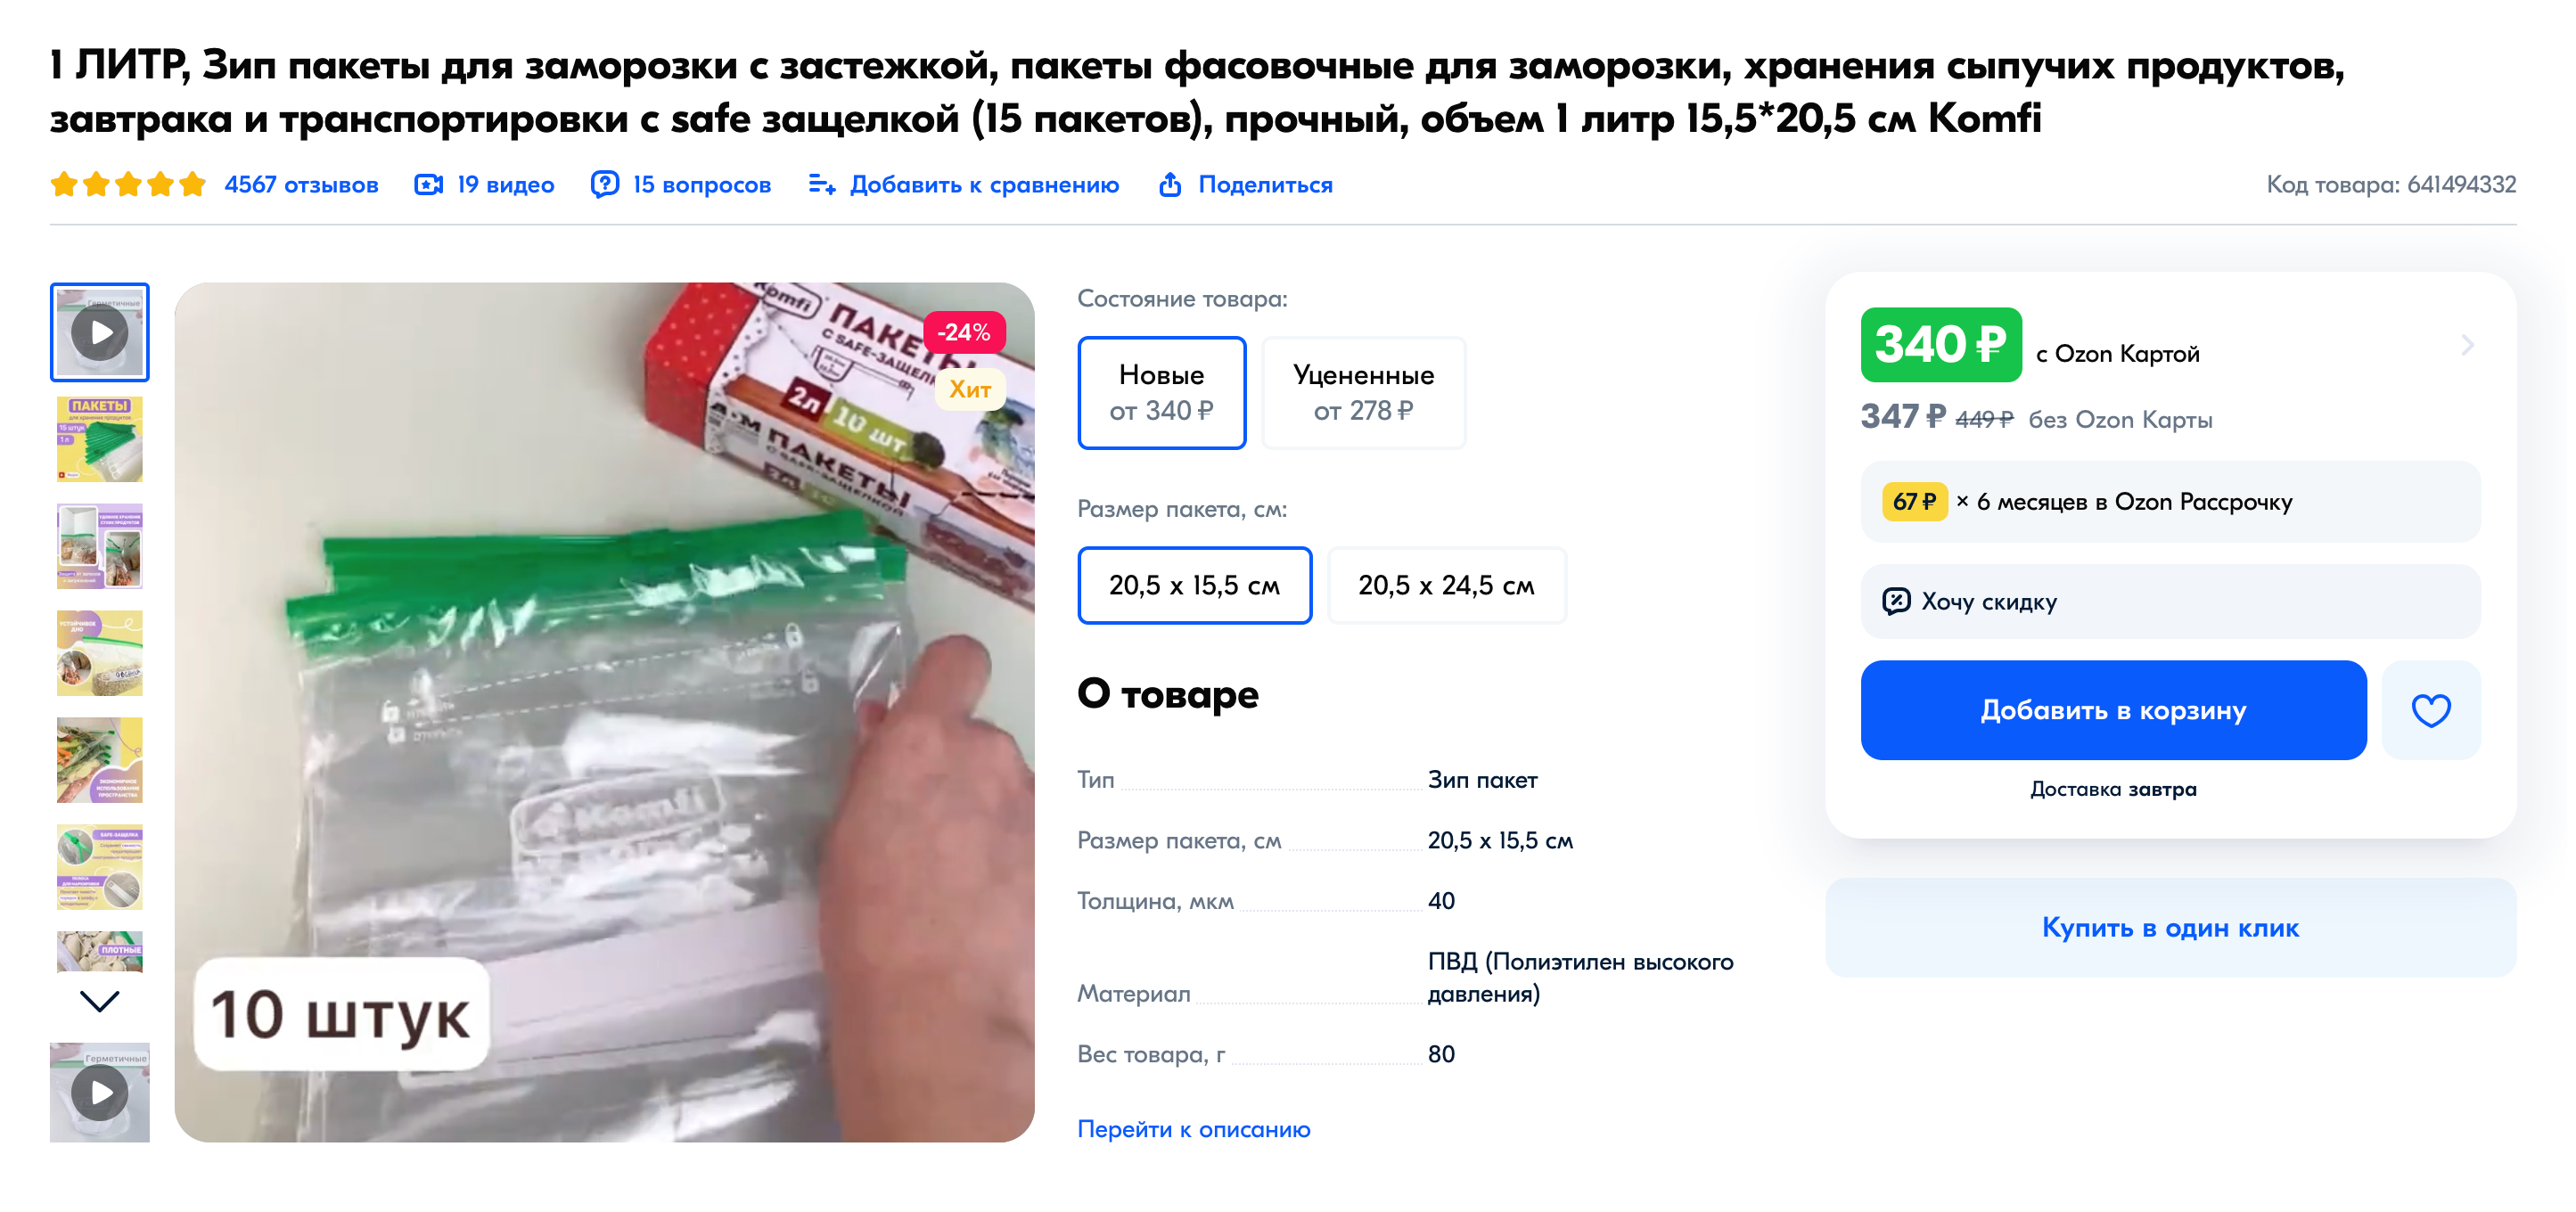 На специальных пакетах есть место для записи даты заморозки. Источник: ozon.ru